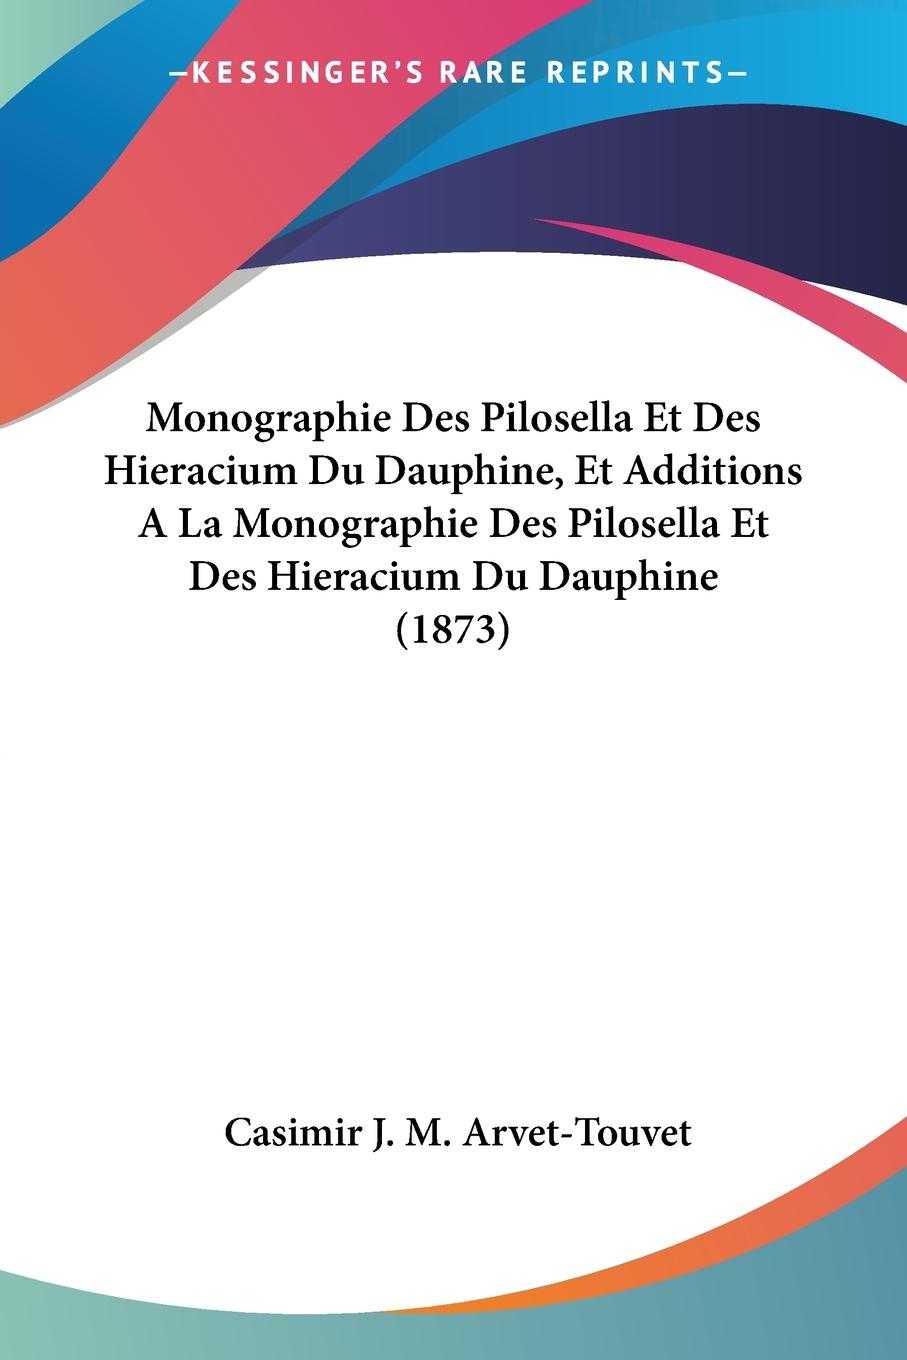 Monographie Des Pilosella Et Des Hieracium Du Dauphine, Et Additions A La Monographie Des Pilosella Et Des Hieracium Du Dauphine (1873) - Arvet-Touvet, Casimir J. M.